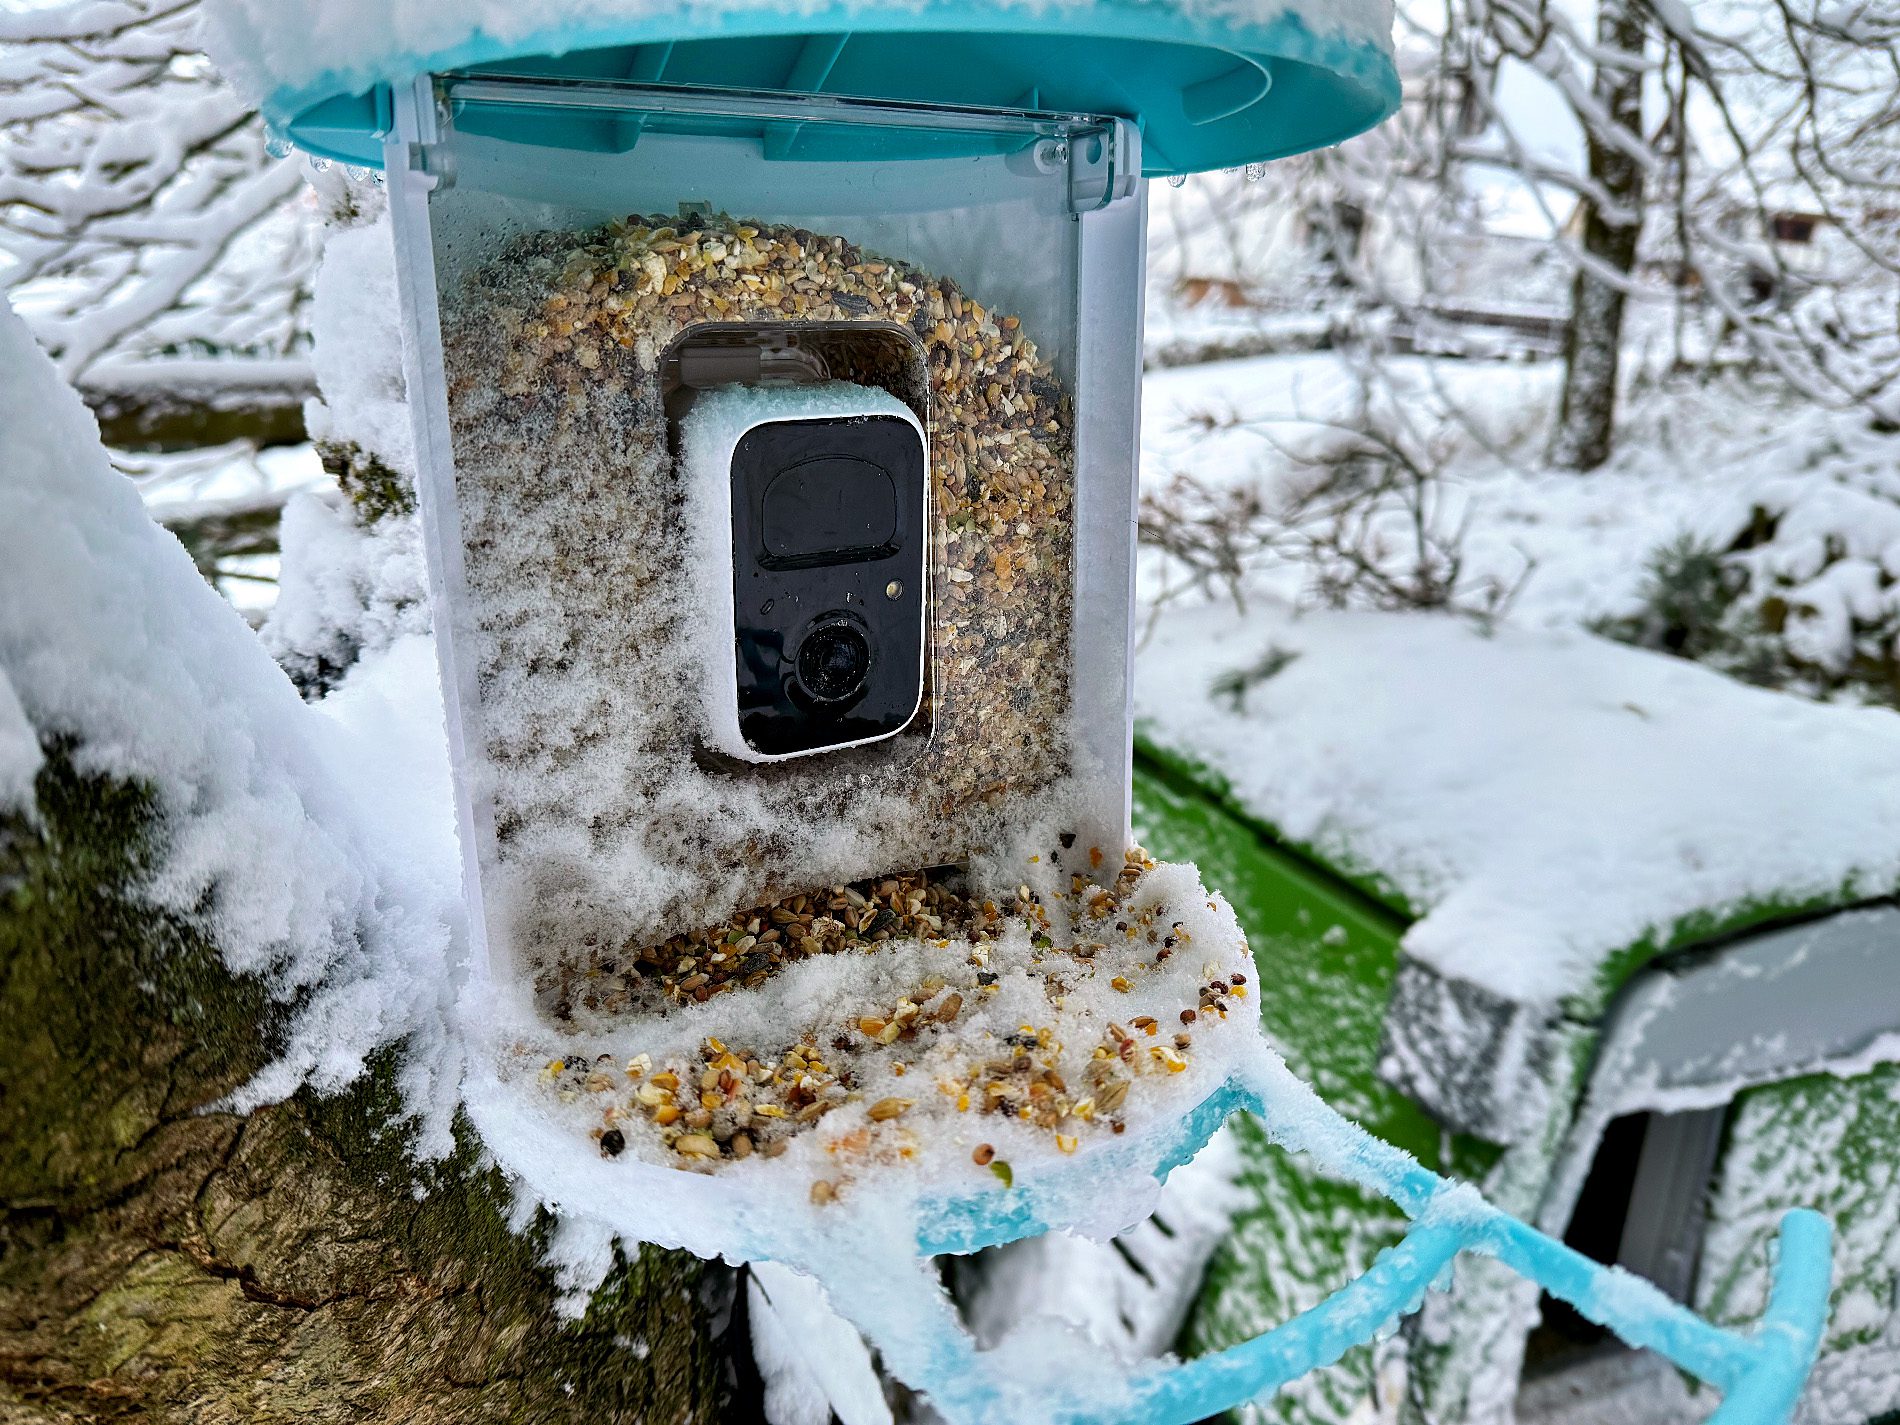 Minustemperaturen, Schnee und Eis haben dem Vogelfutterhäuschen und vor allem der Kamera nichts anhaben können (Fotos: Sir Apfelot).